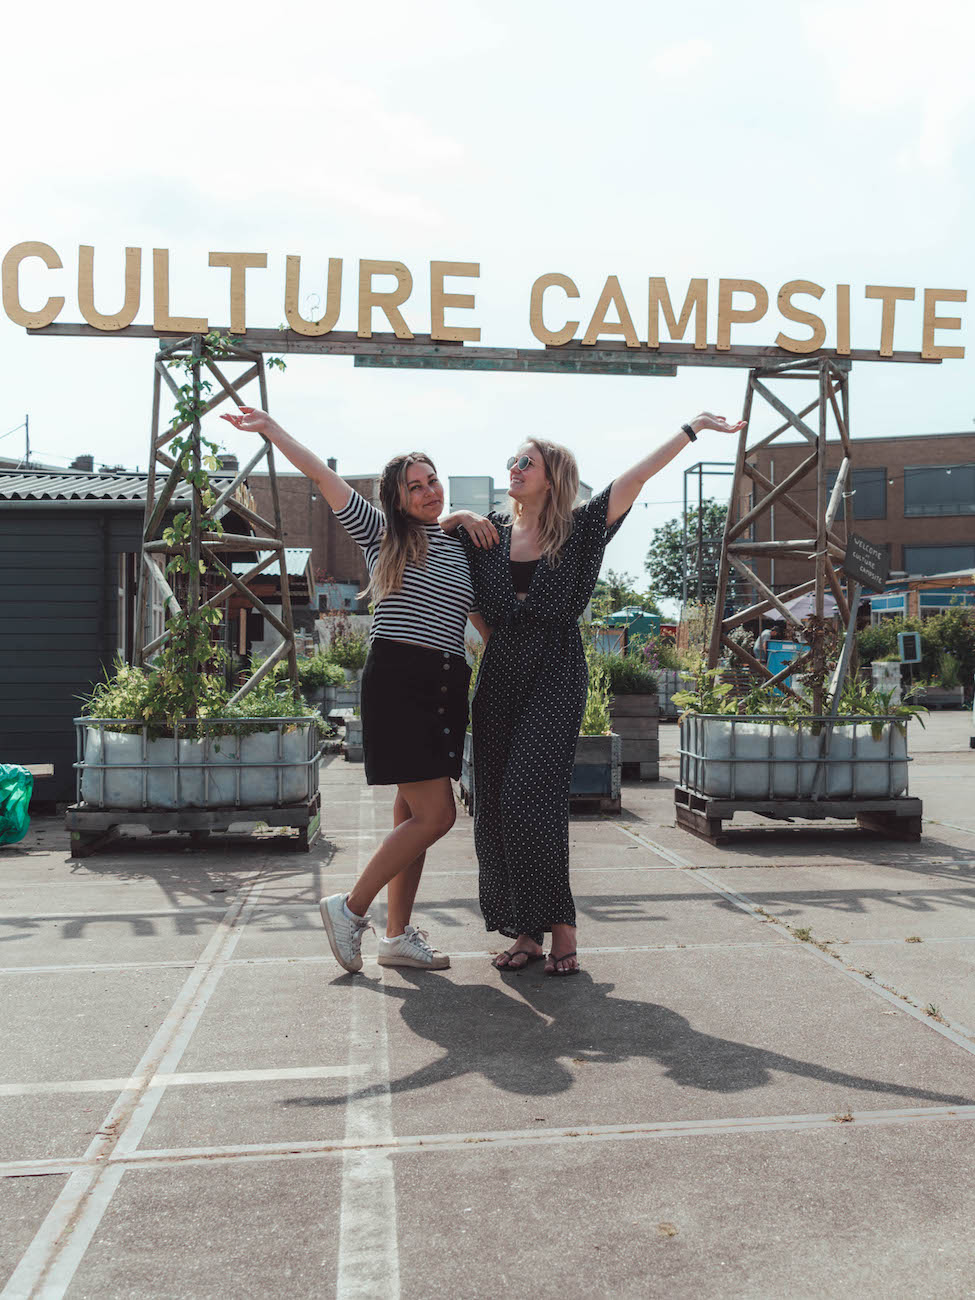 Culture Campsite Rotterdam